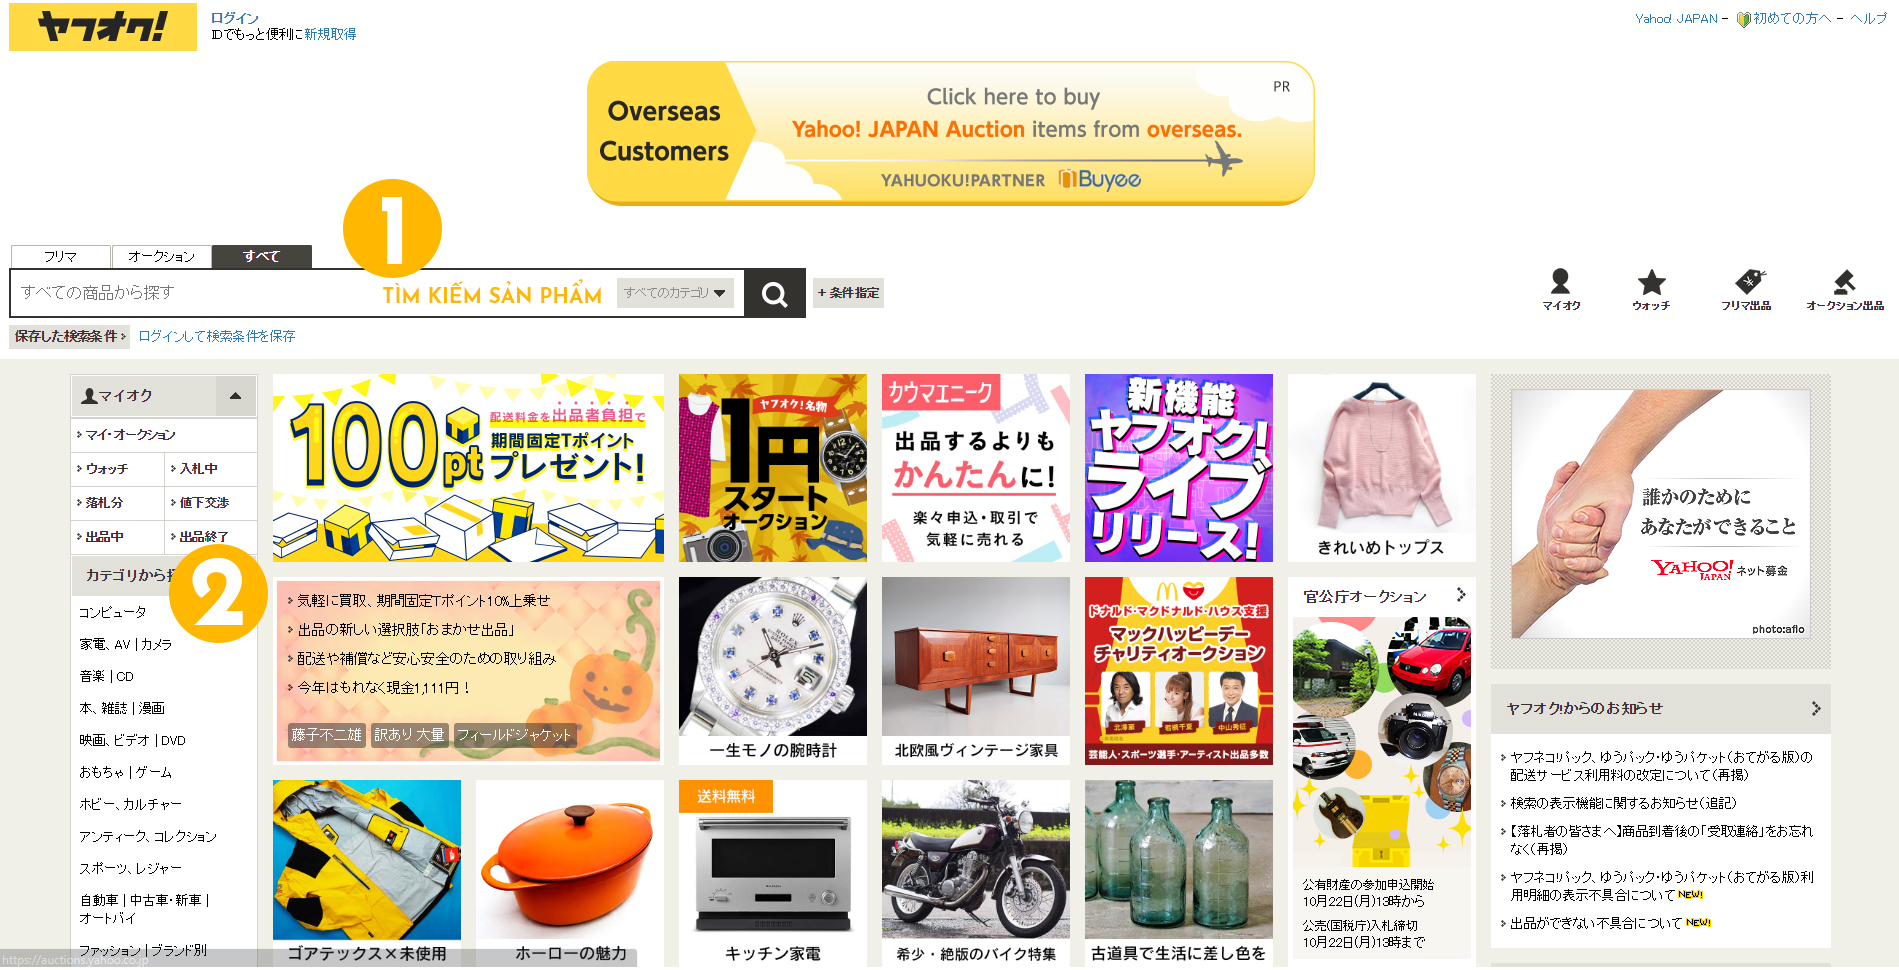 Đấu giá hàng Nhật trên Yahoo Auction 